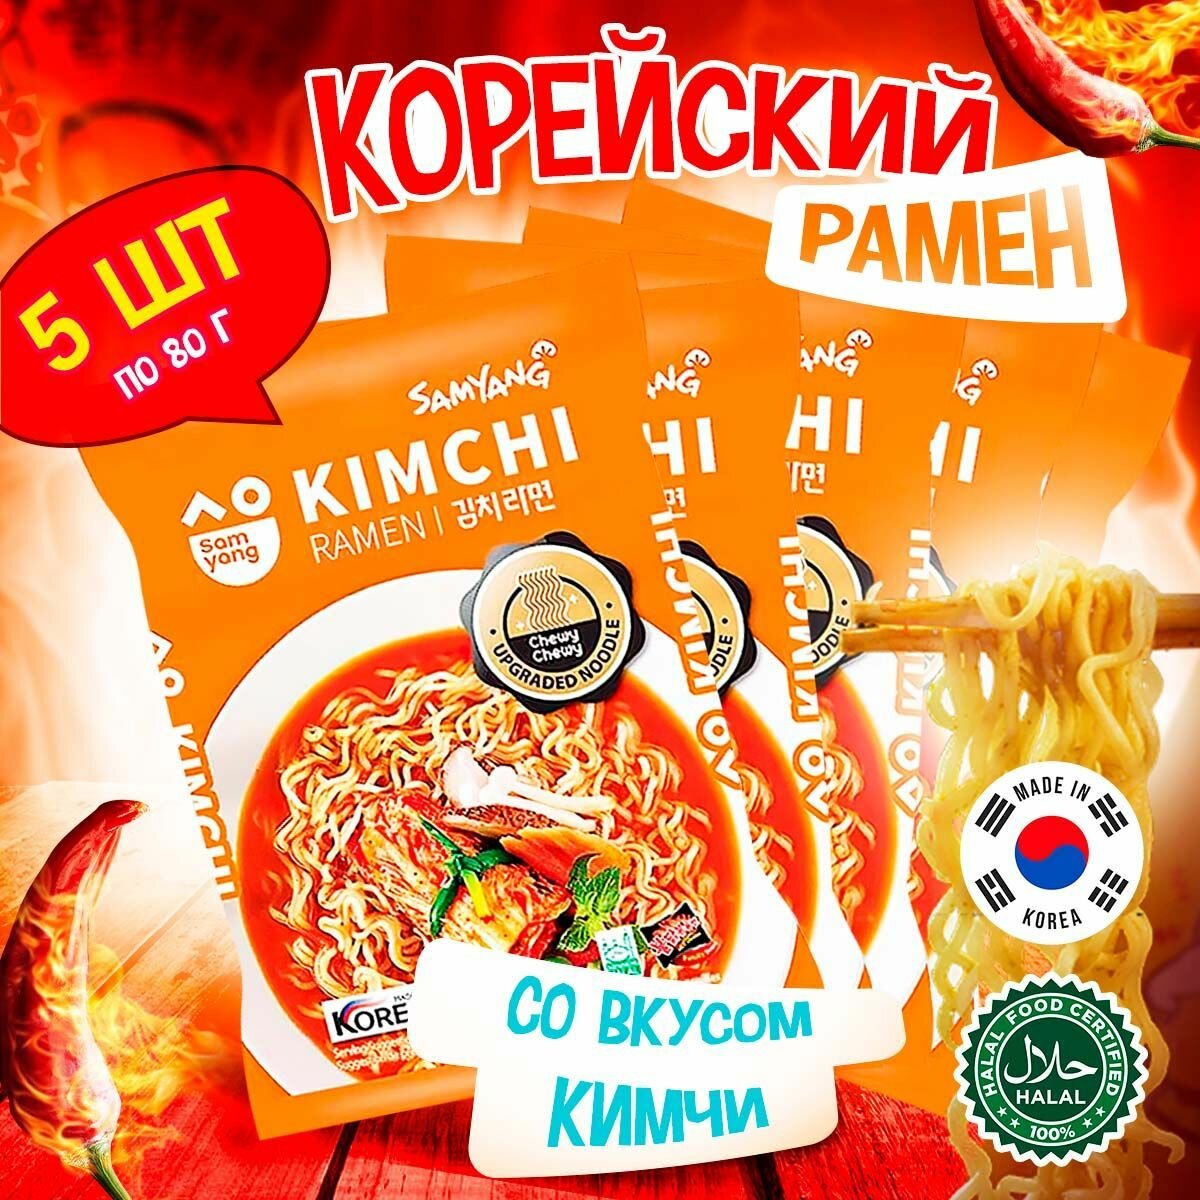 Корейская лапша быстрого приготовления Samyang Kimchi Ramen со вкусом кимчи (Корея), 80 г (5 шт)